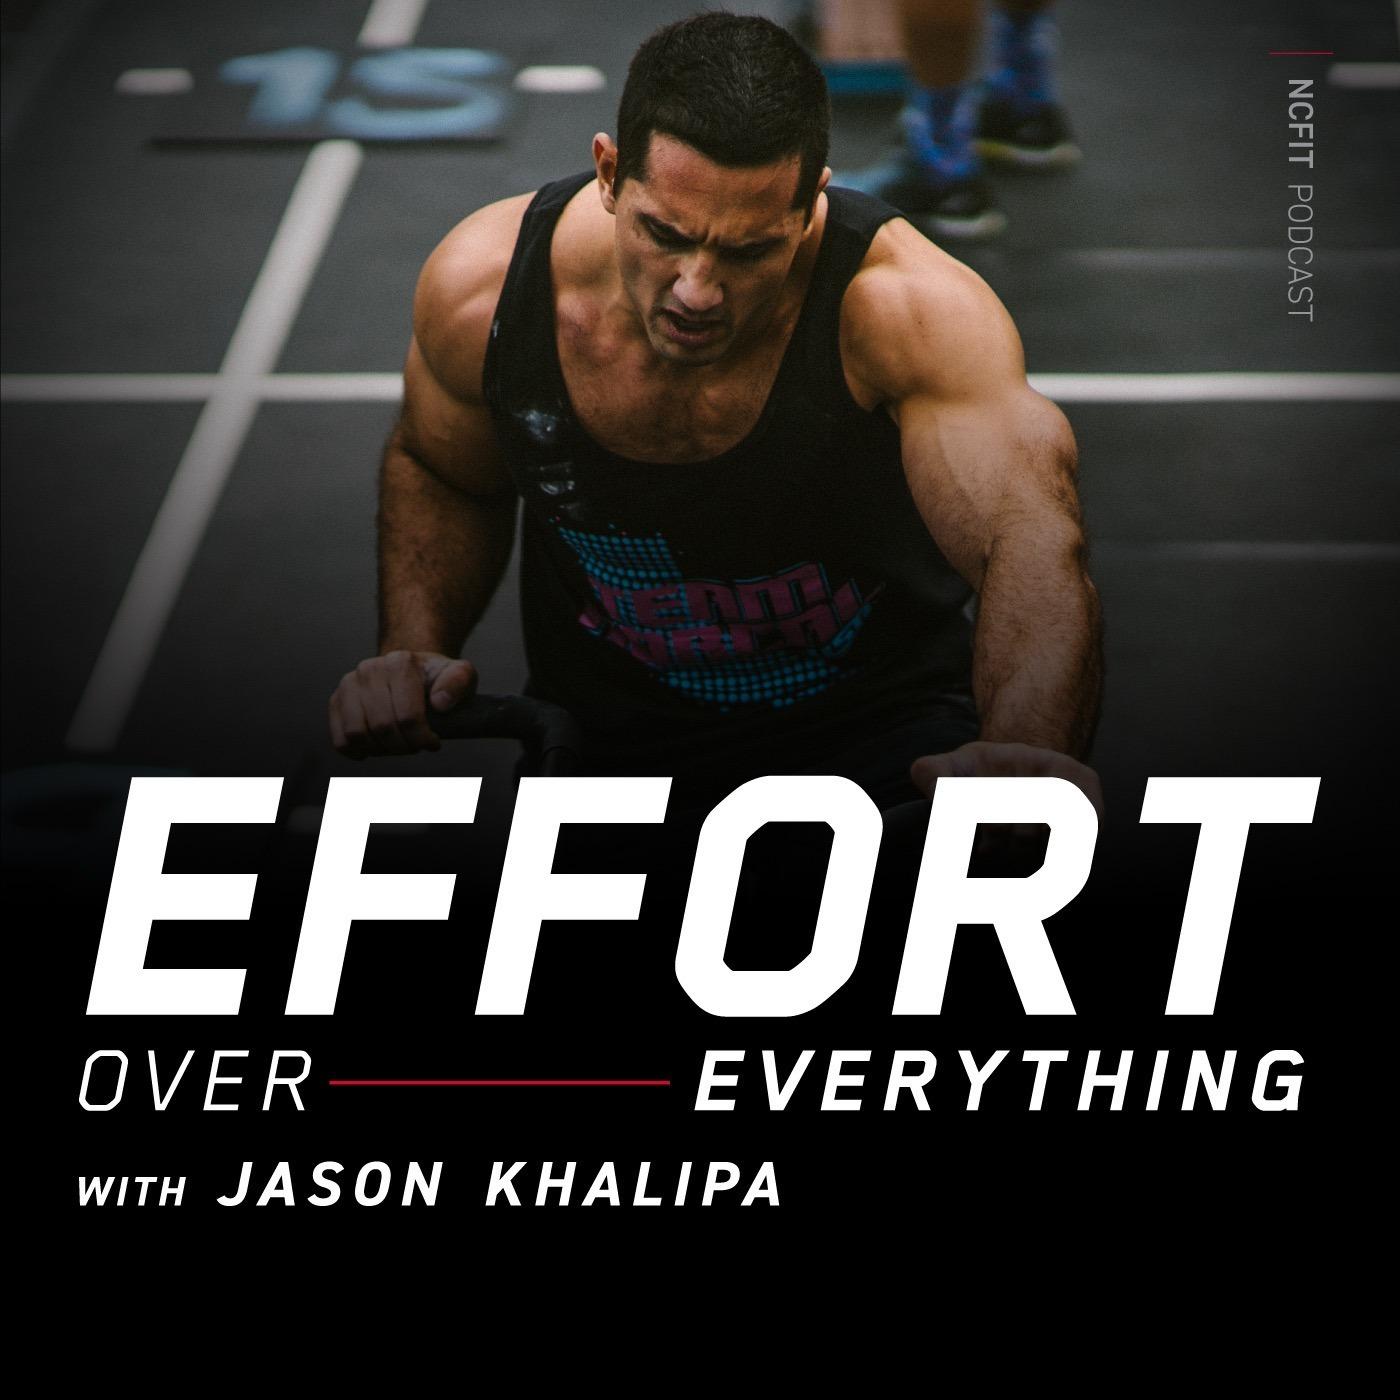 Effort Over Everything with Jason Khalipa